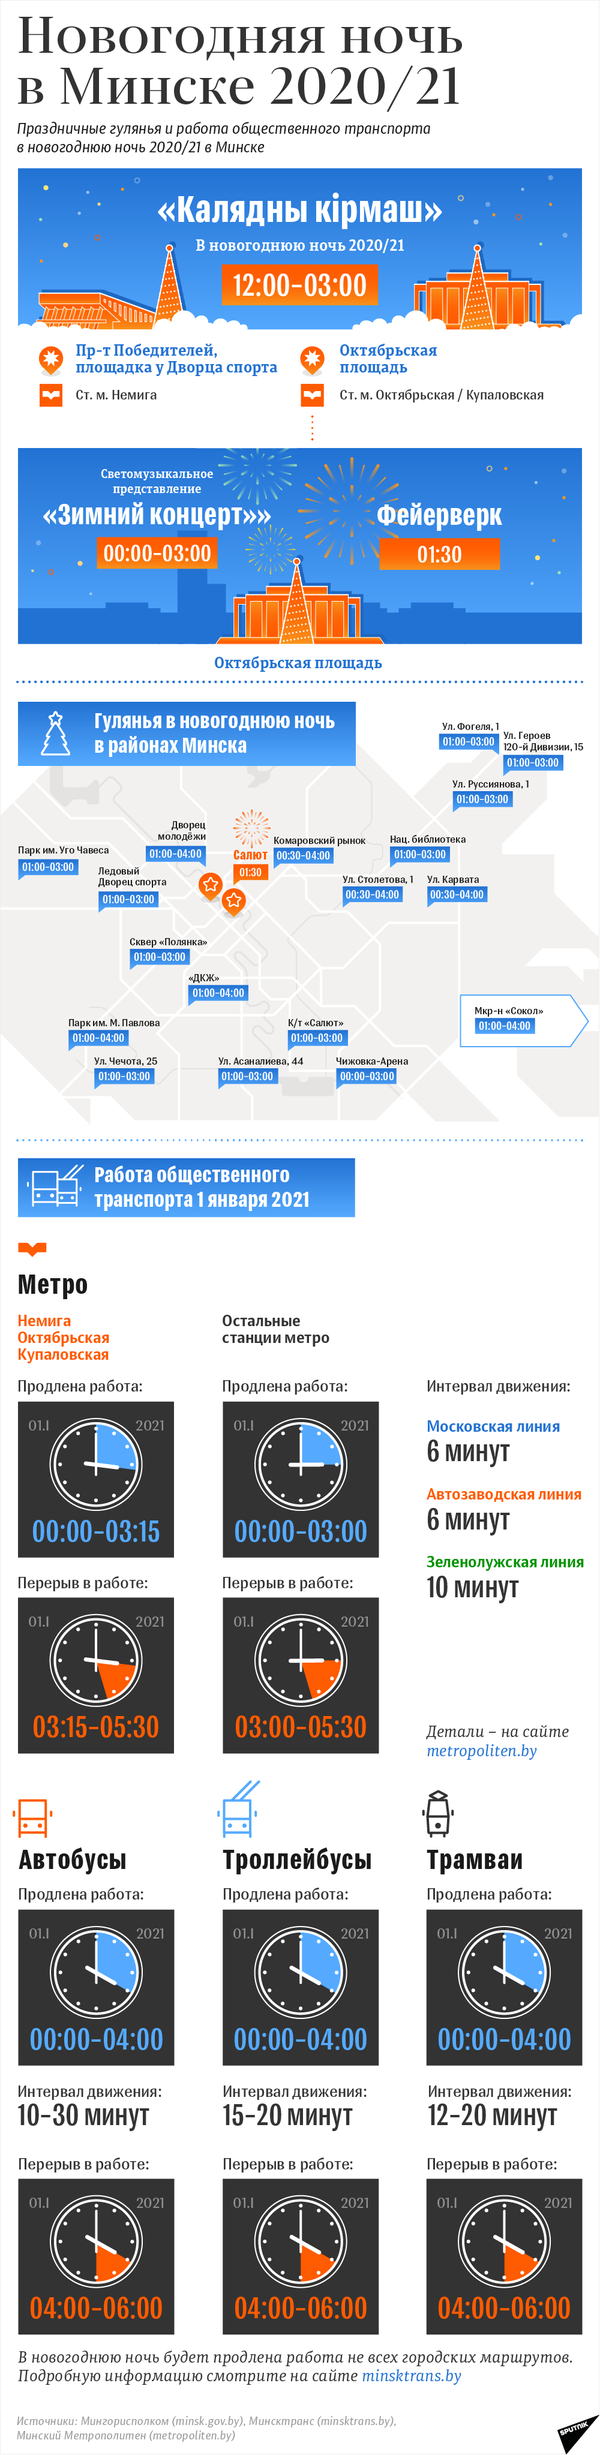 Праздничные гулянья и работа общественного транспорта в новогоднюю ночь 2020/21 в Минске - Sputnik Беларусь